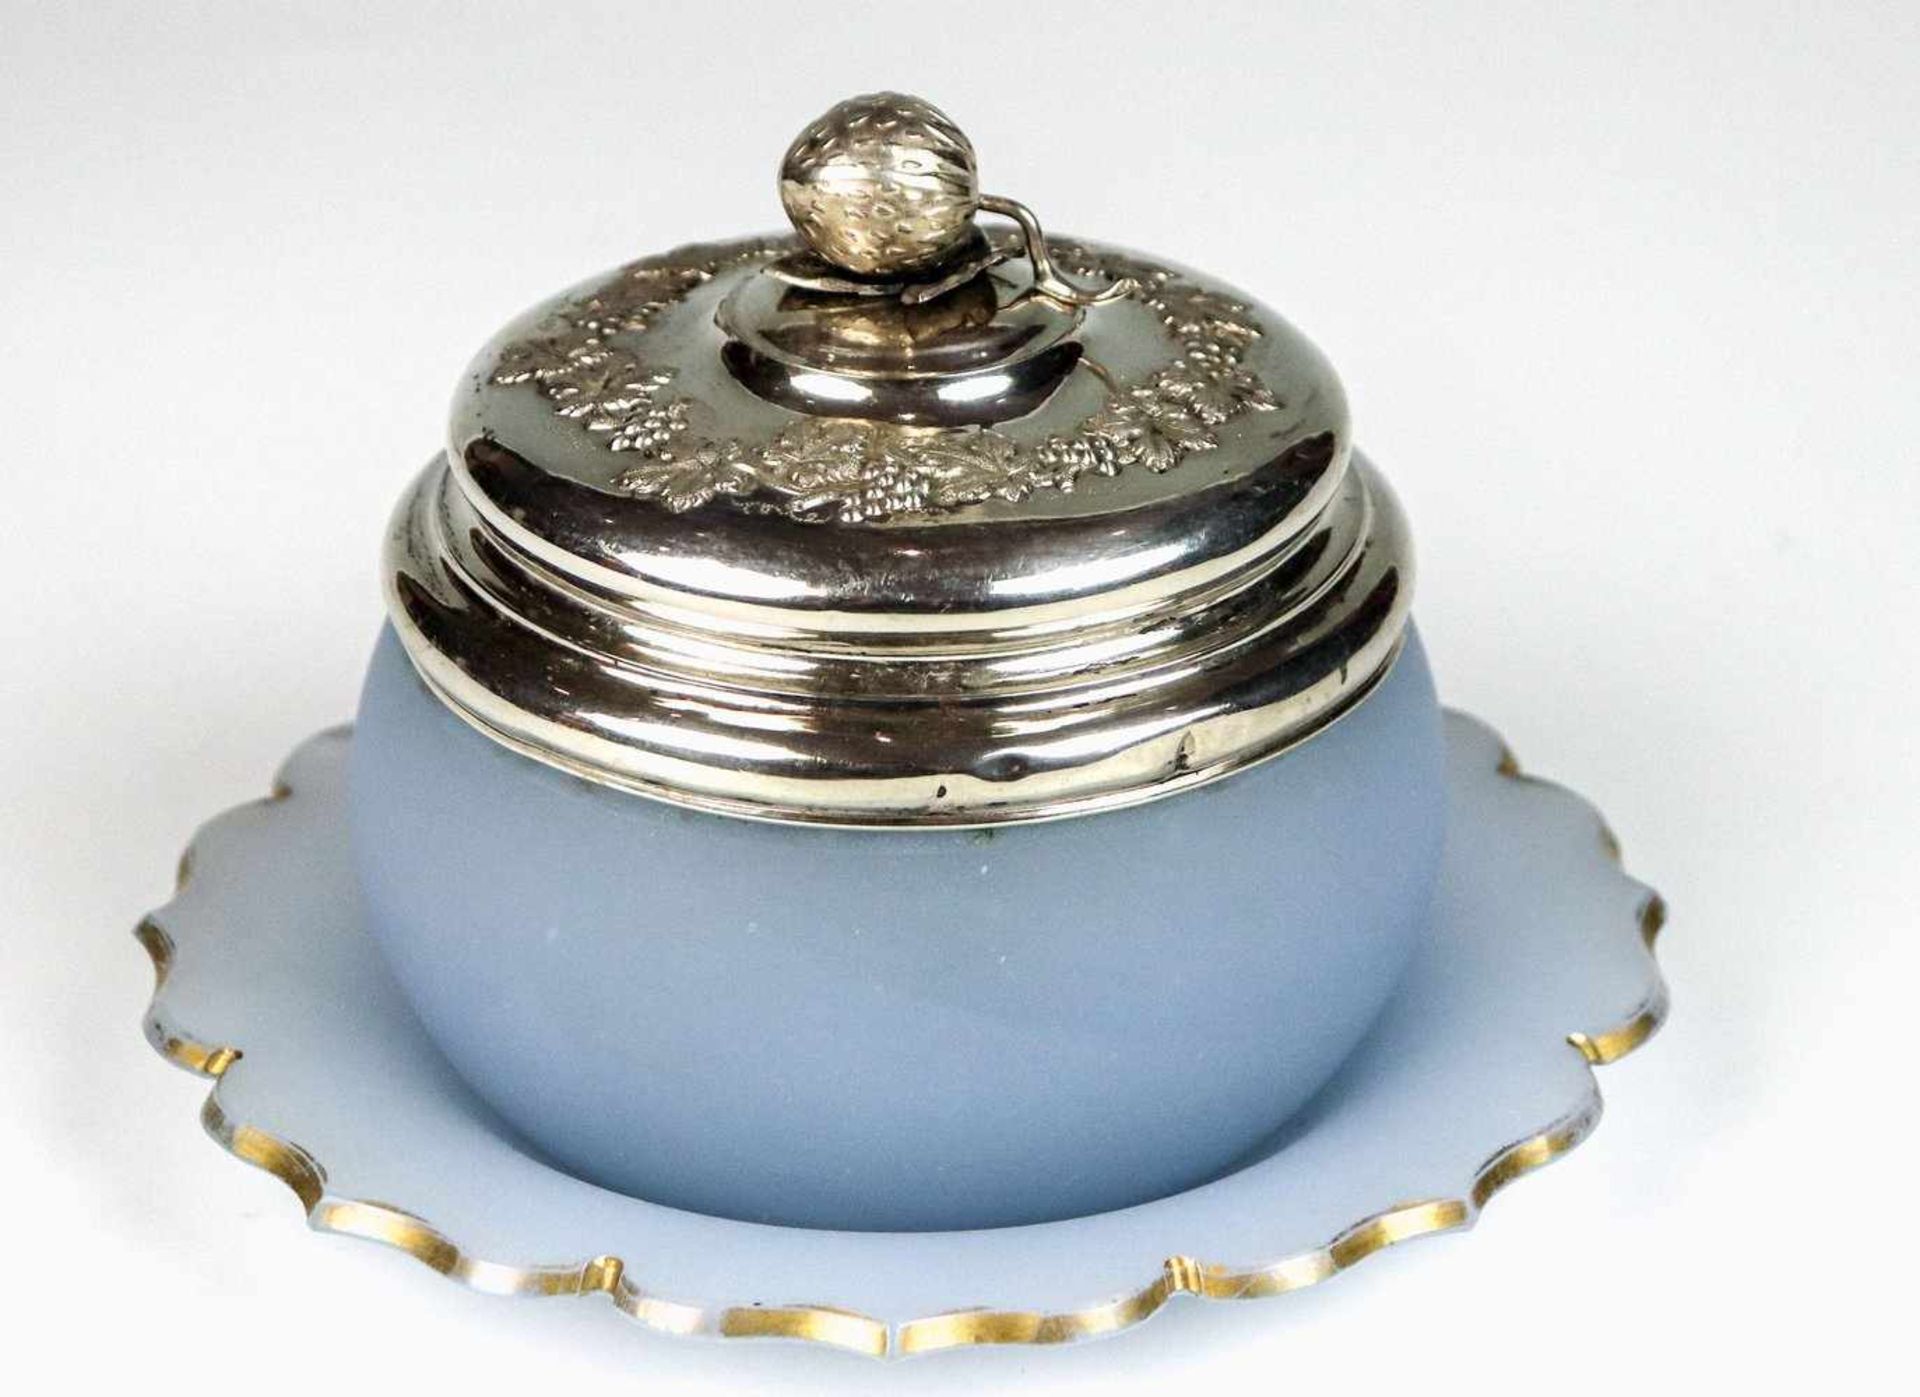 Marmeladendose mit Silberdeckel auf UntertellerSchlesien, um 1860Hellblaues Alabasterglas. Runde,